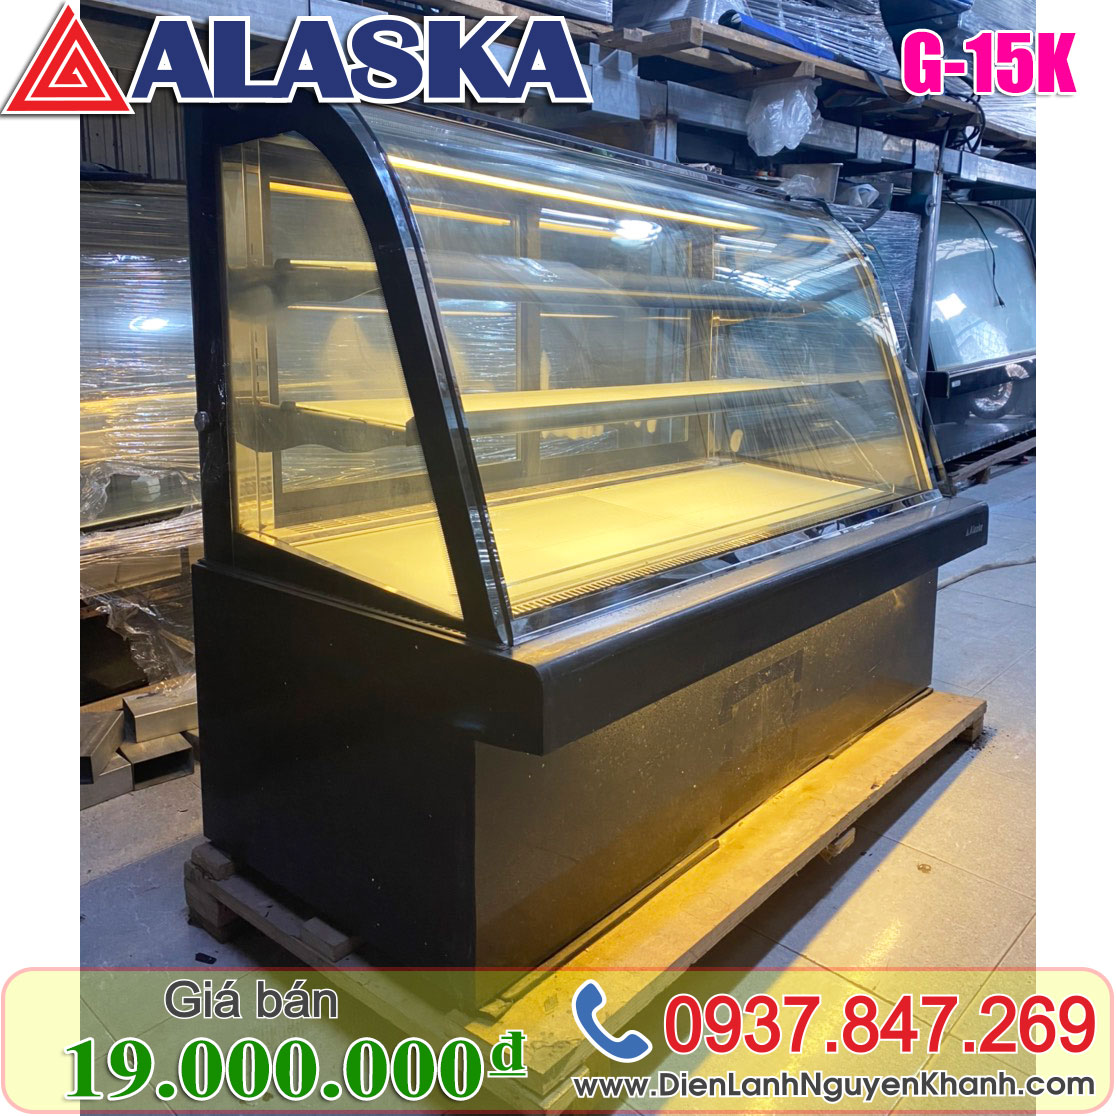 Tủ mát trưng bày bánh kem Alaska 1.5m G-15K